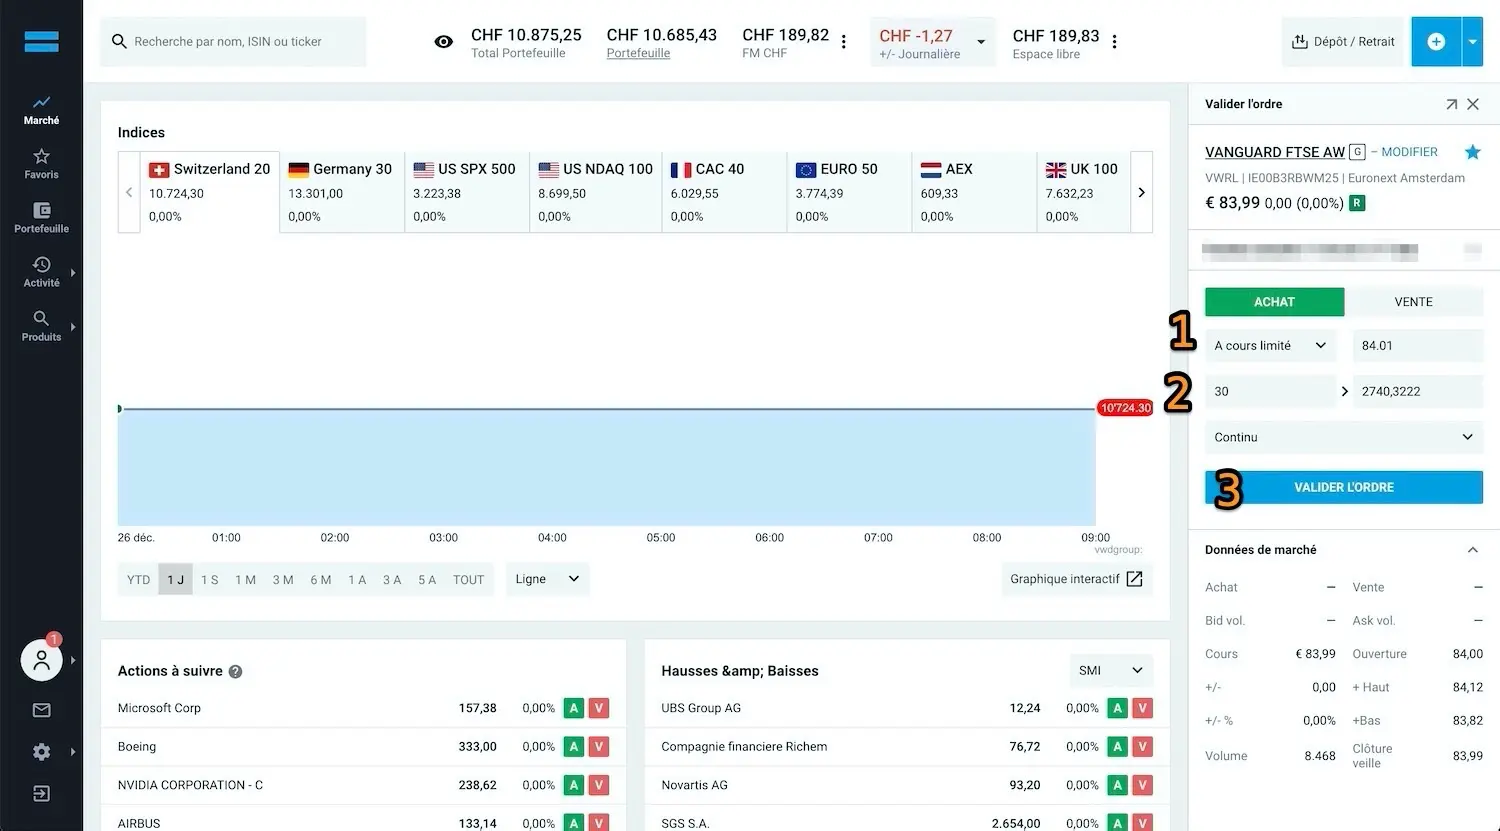 Bildschirm für den Kauf des VWRL ETF auf der Trading-Plattform DEGIRO